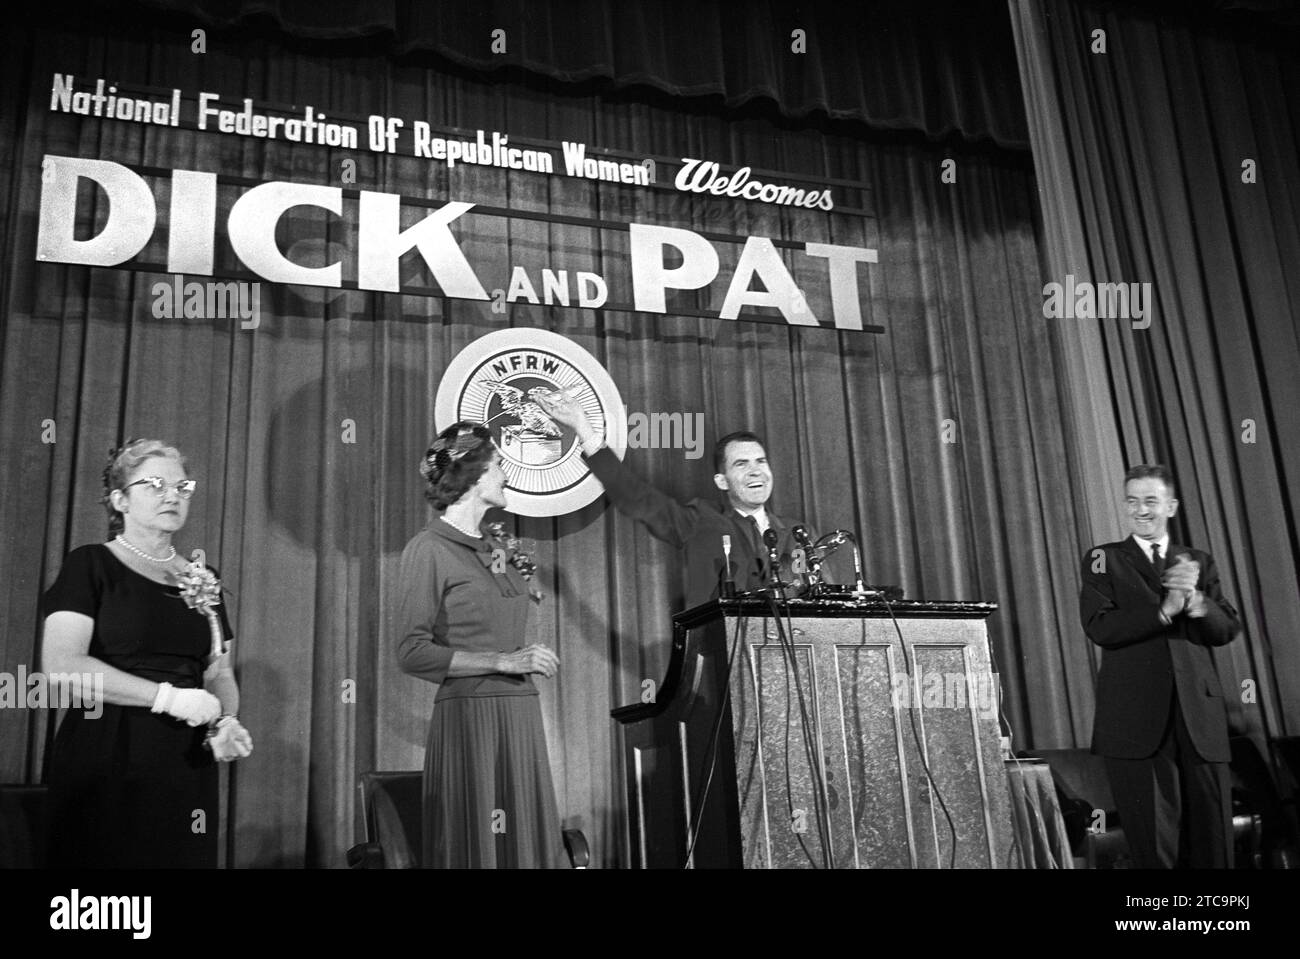 Le vice-président américain Richard Nixon avec son épouse Pat Nixon sur scène, prononçant un discours devant la Fédération nationale des femmes républicaines lors d'un voyage de campagne, Atlantic City, New Jersey, USA, Thomas J. O'Halloran, U.S. News & World Report Magazine Photography Collection, 16 septembre 1960 Banque D'Images